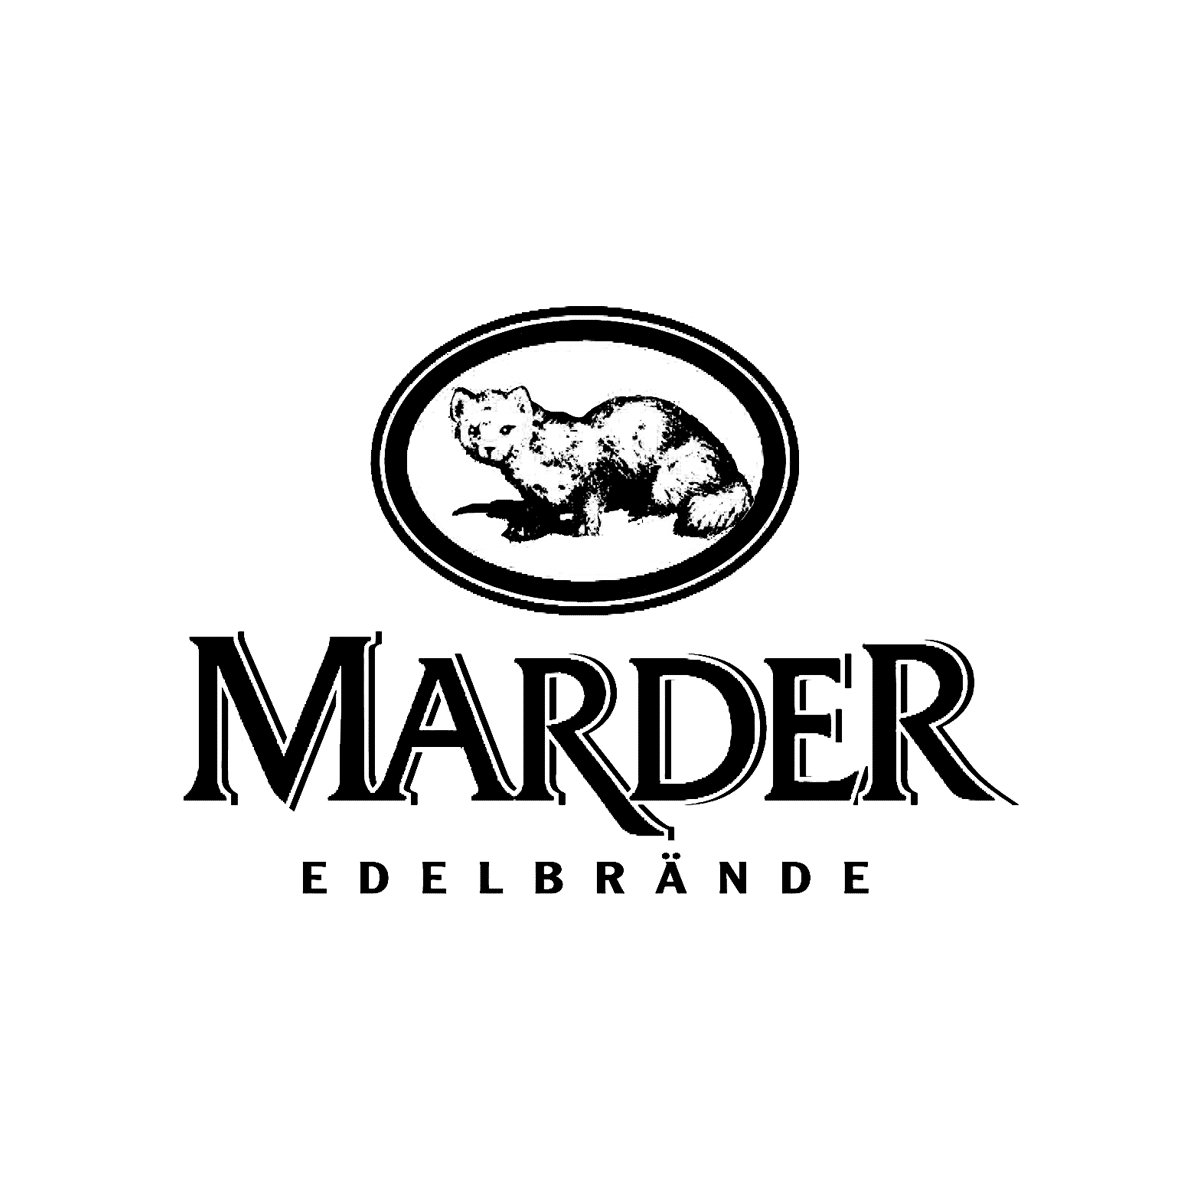 Marder Edelbr